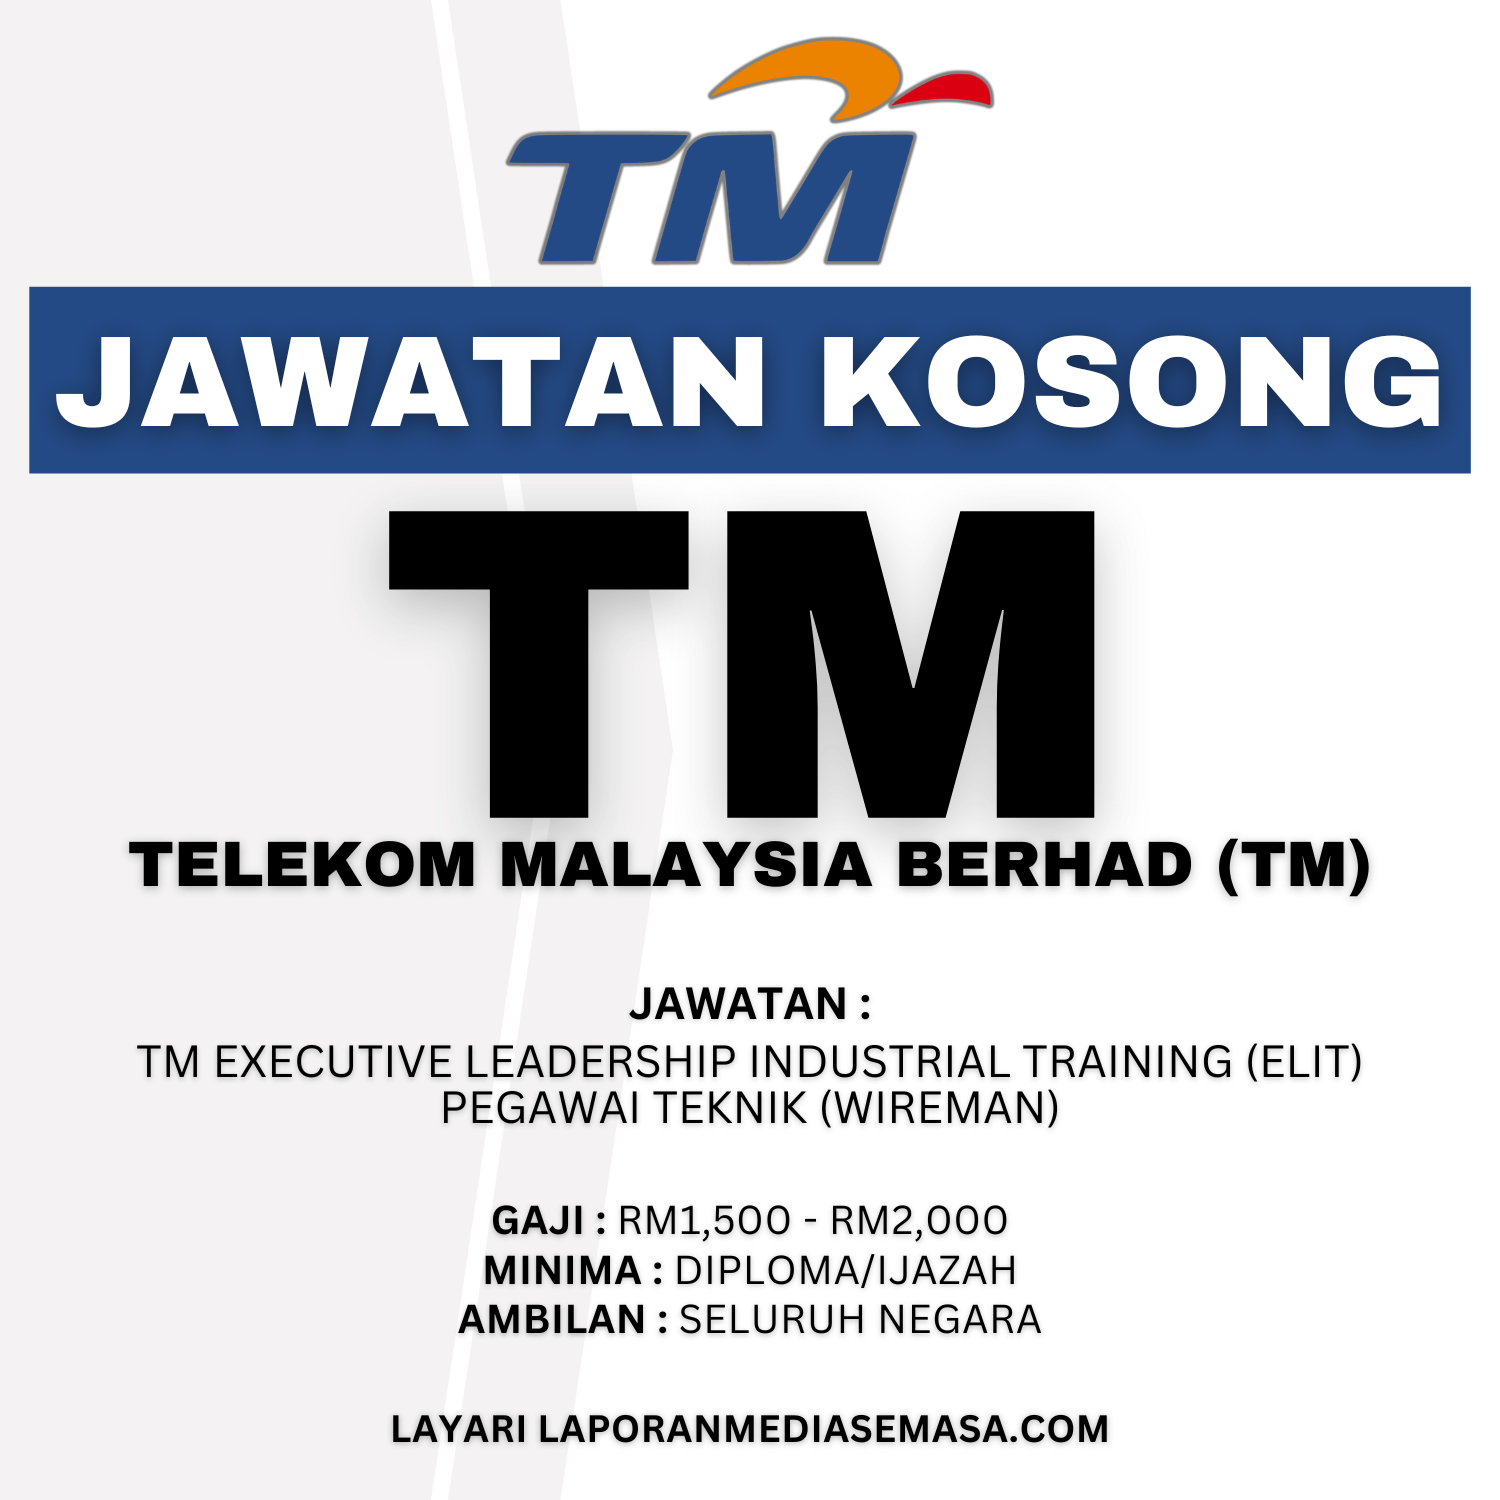 Jawatan Kosong Telekom Malaysia